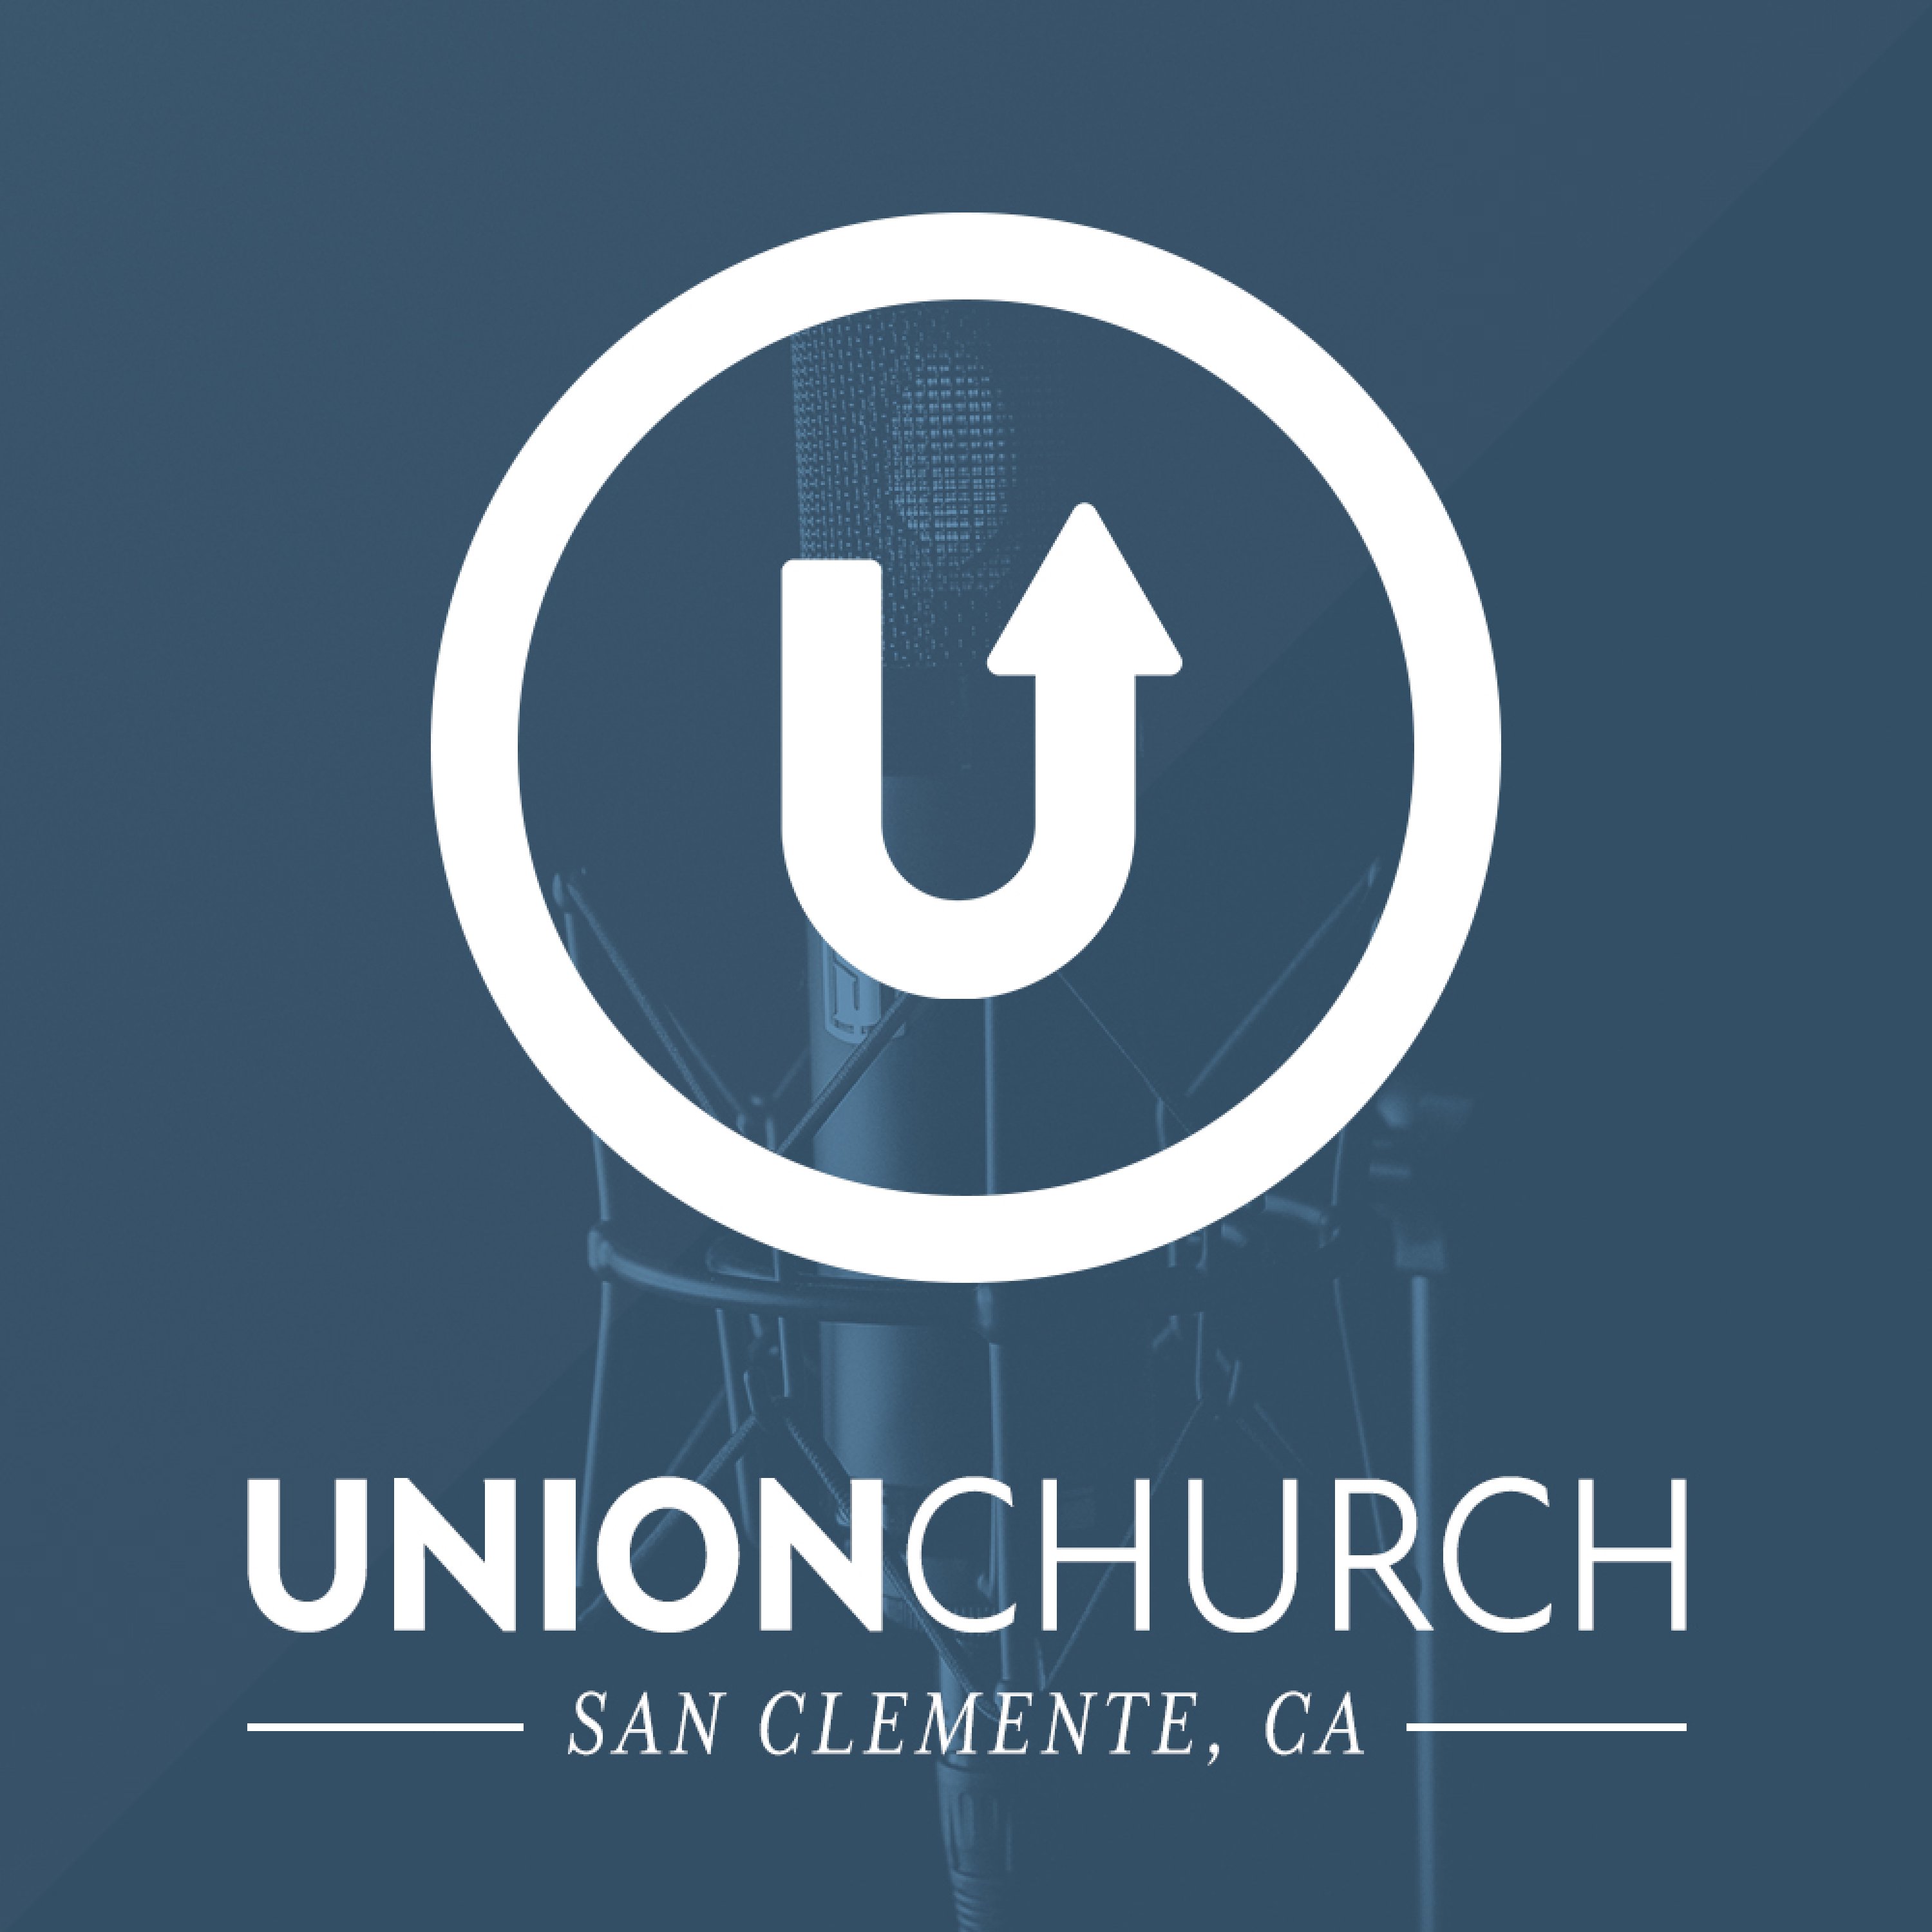 Union Church - San Clemente, CA